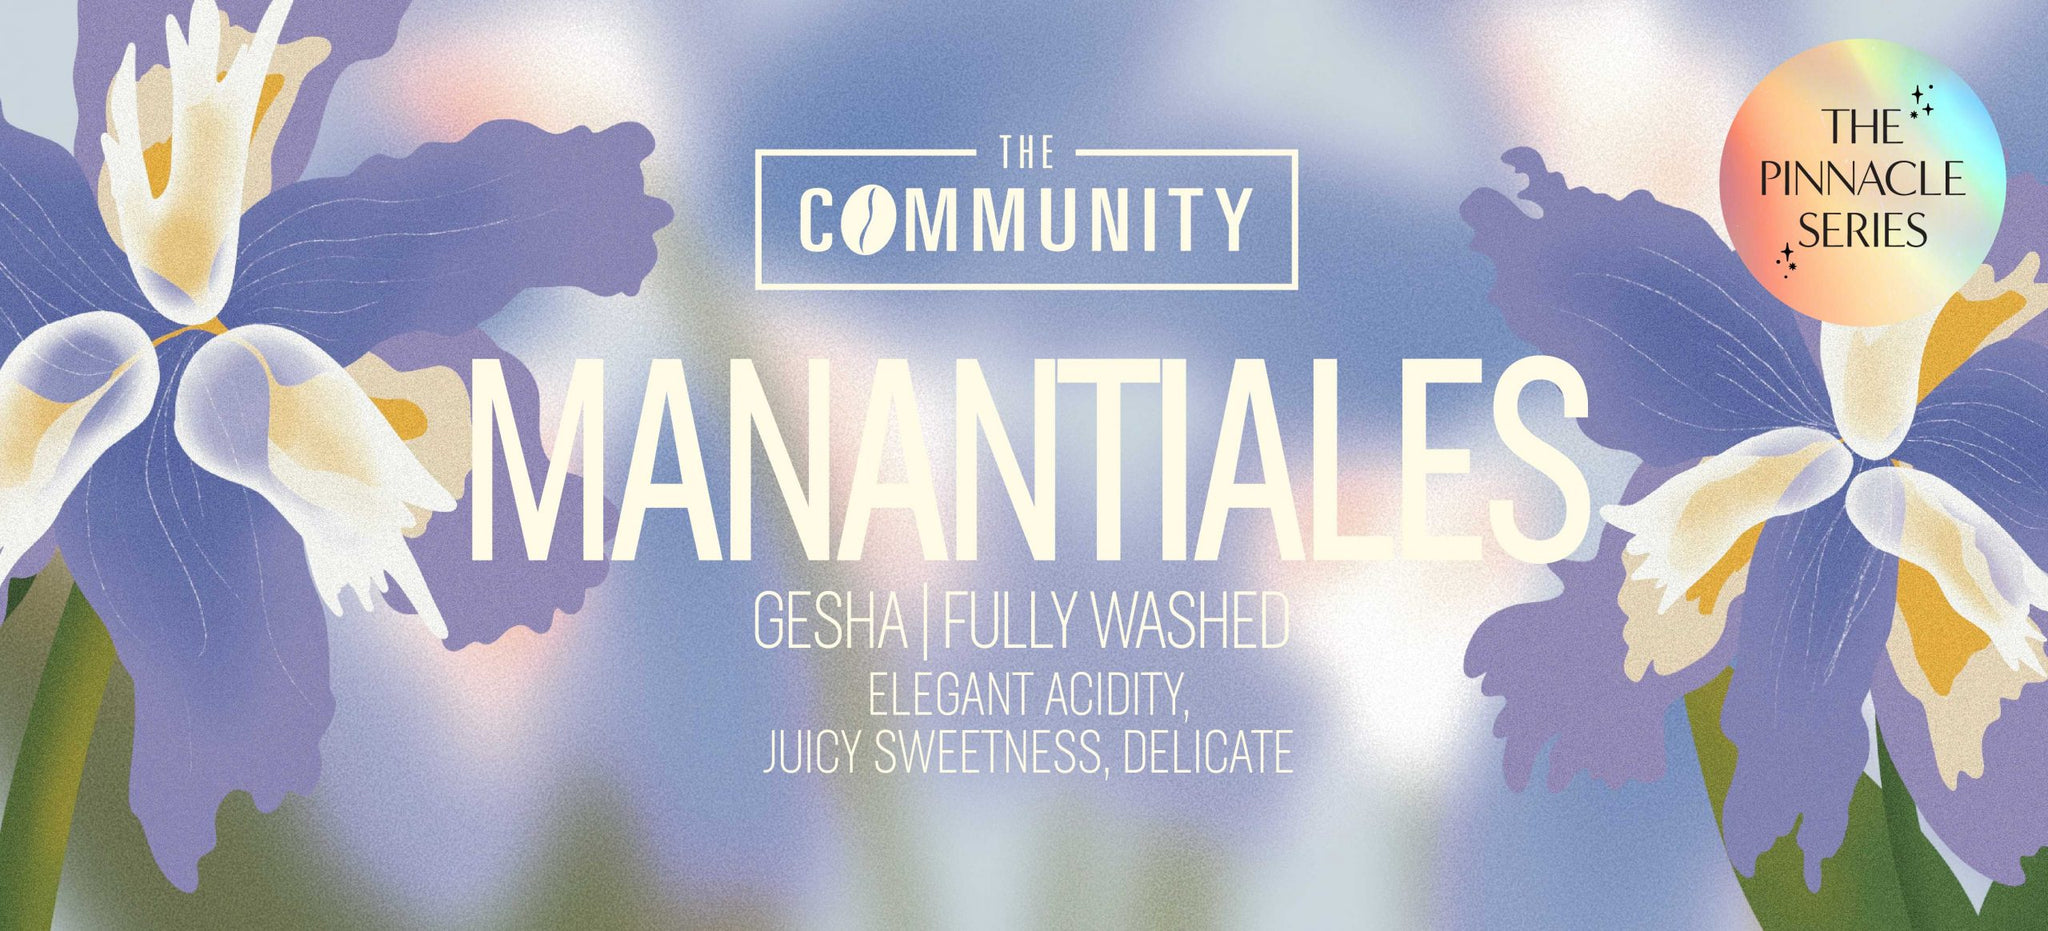 The Community - The Pinnacle Series Manantiales Gesha